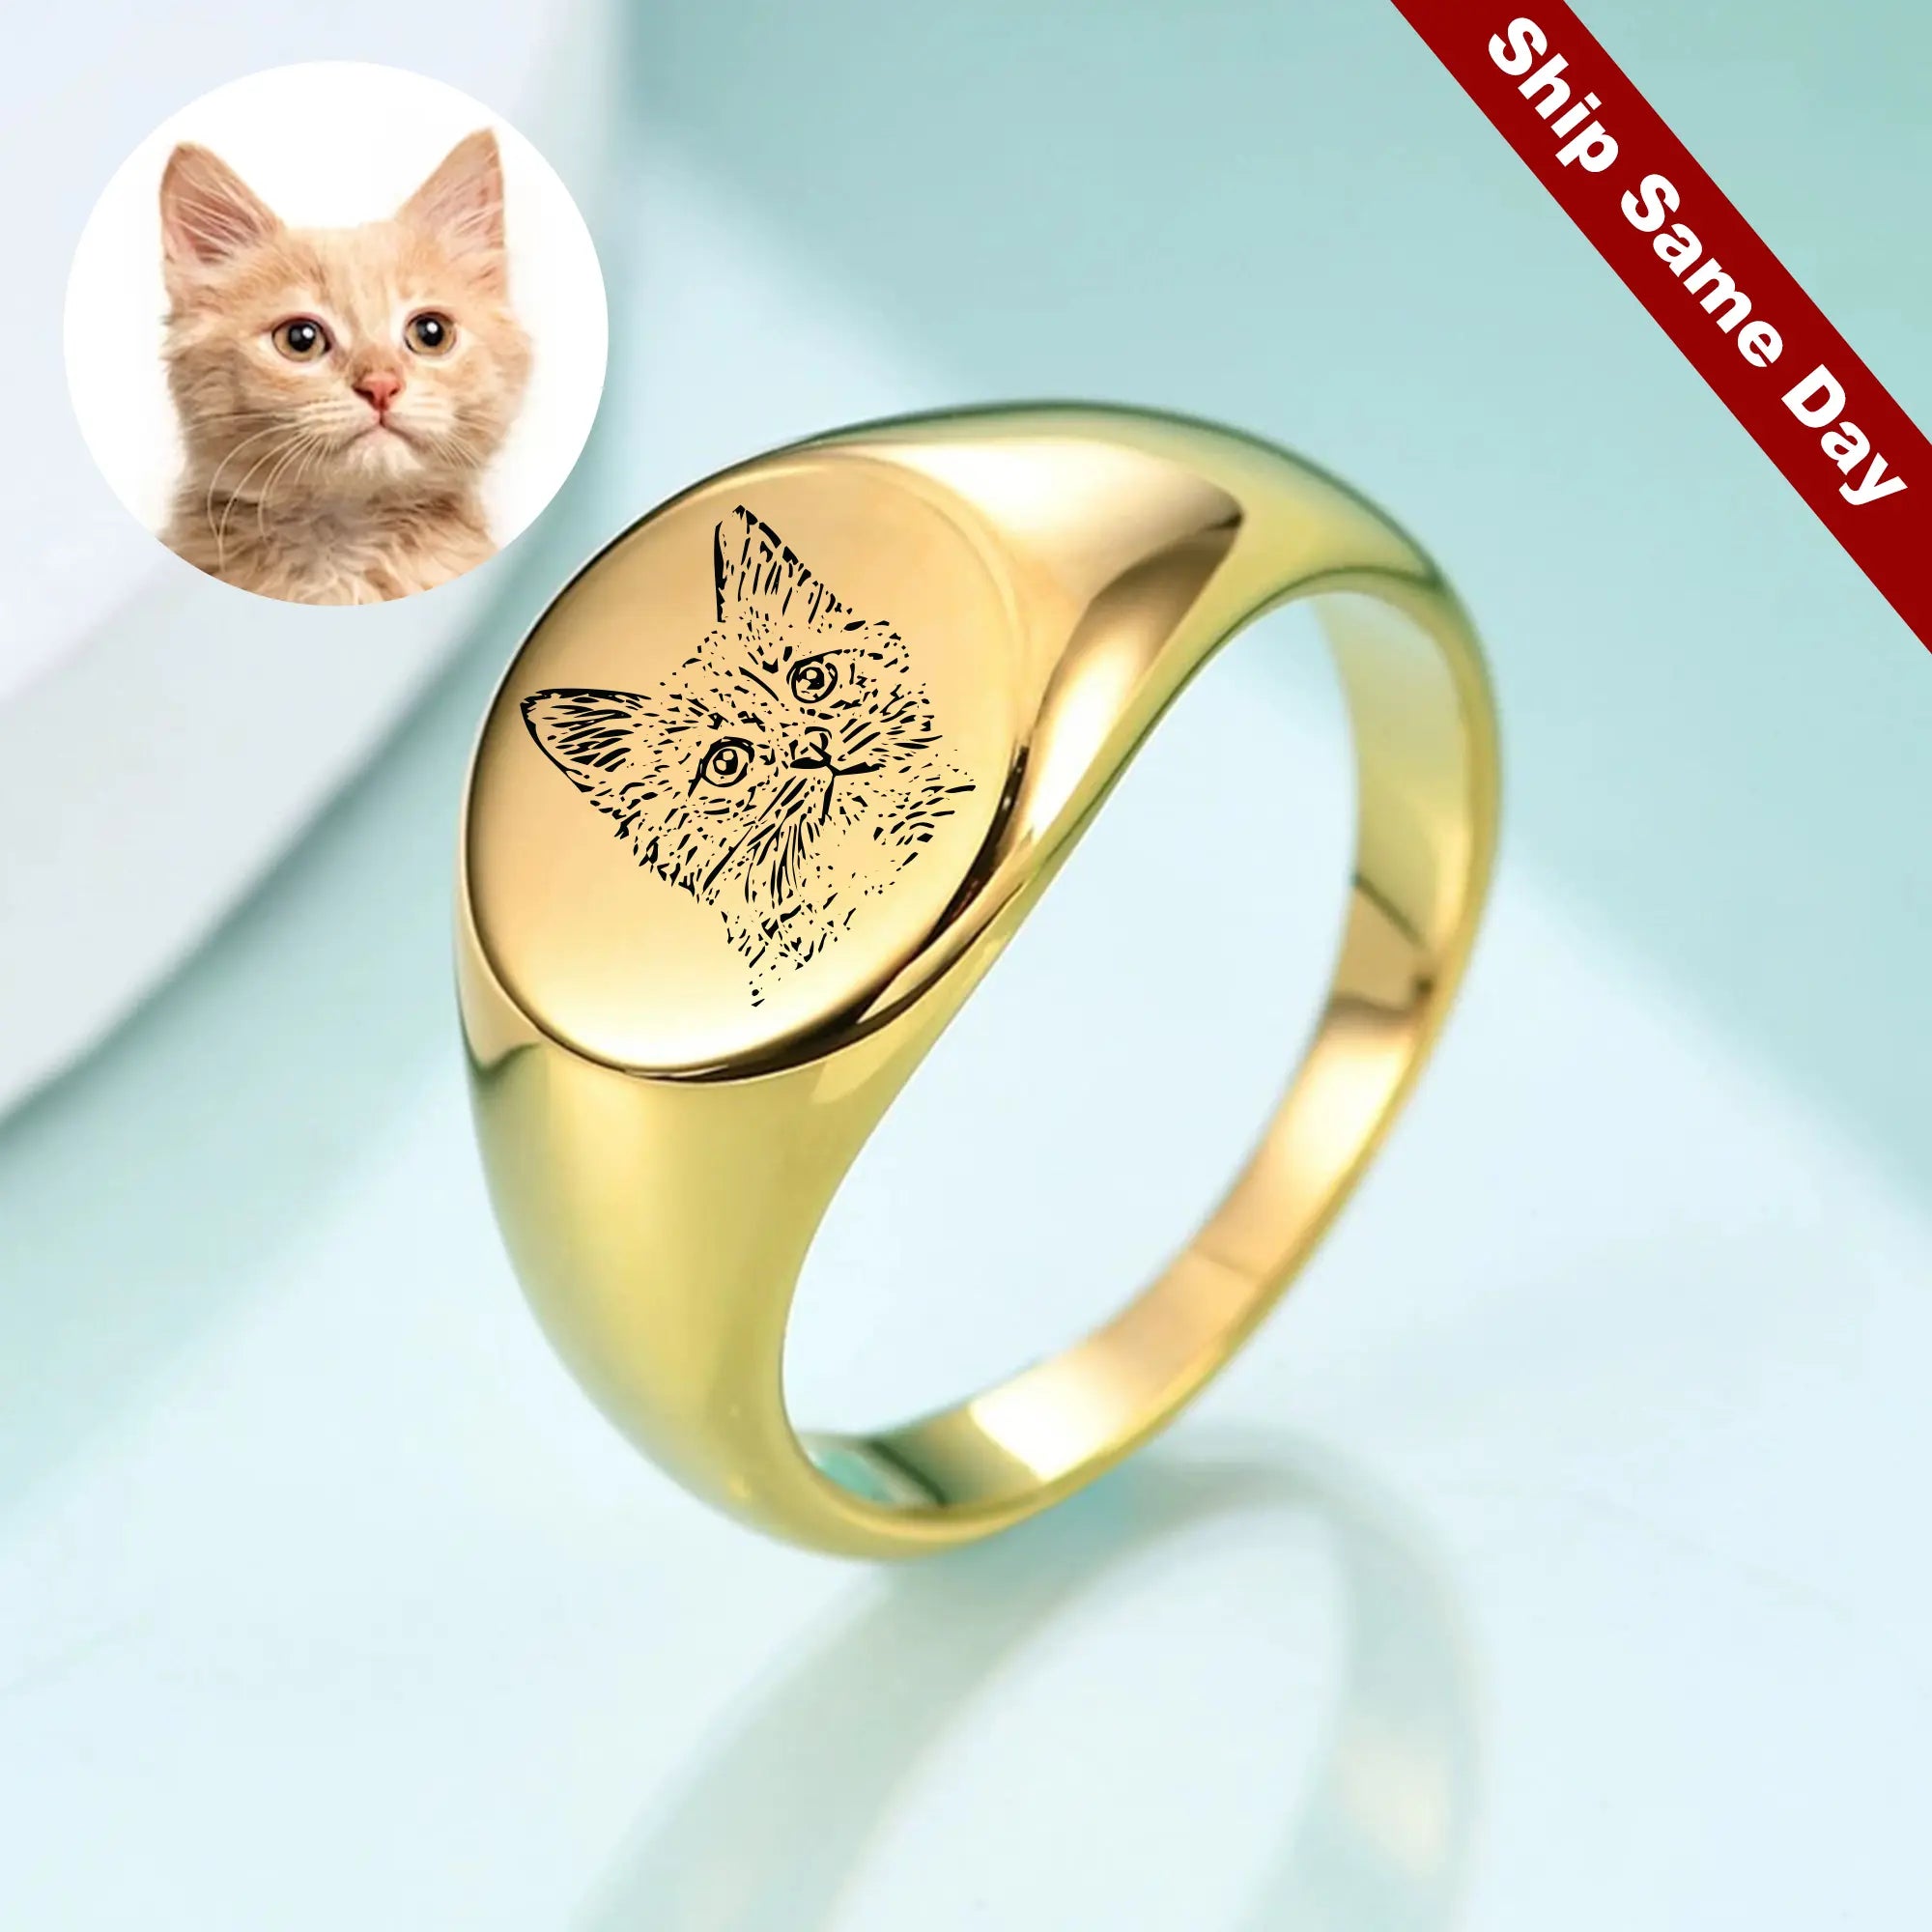 Cat lover rings, Pet memorial rings, Paw print rings, Unique pet gifts